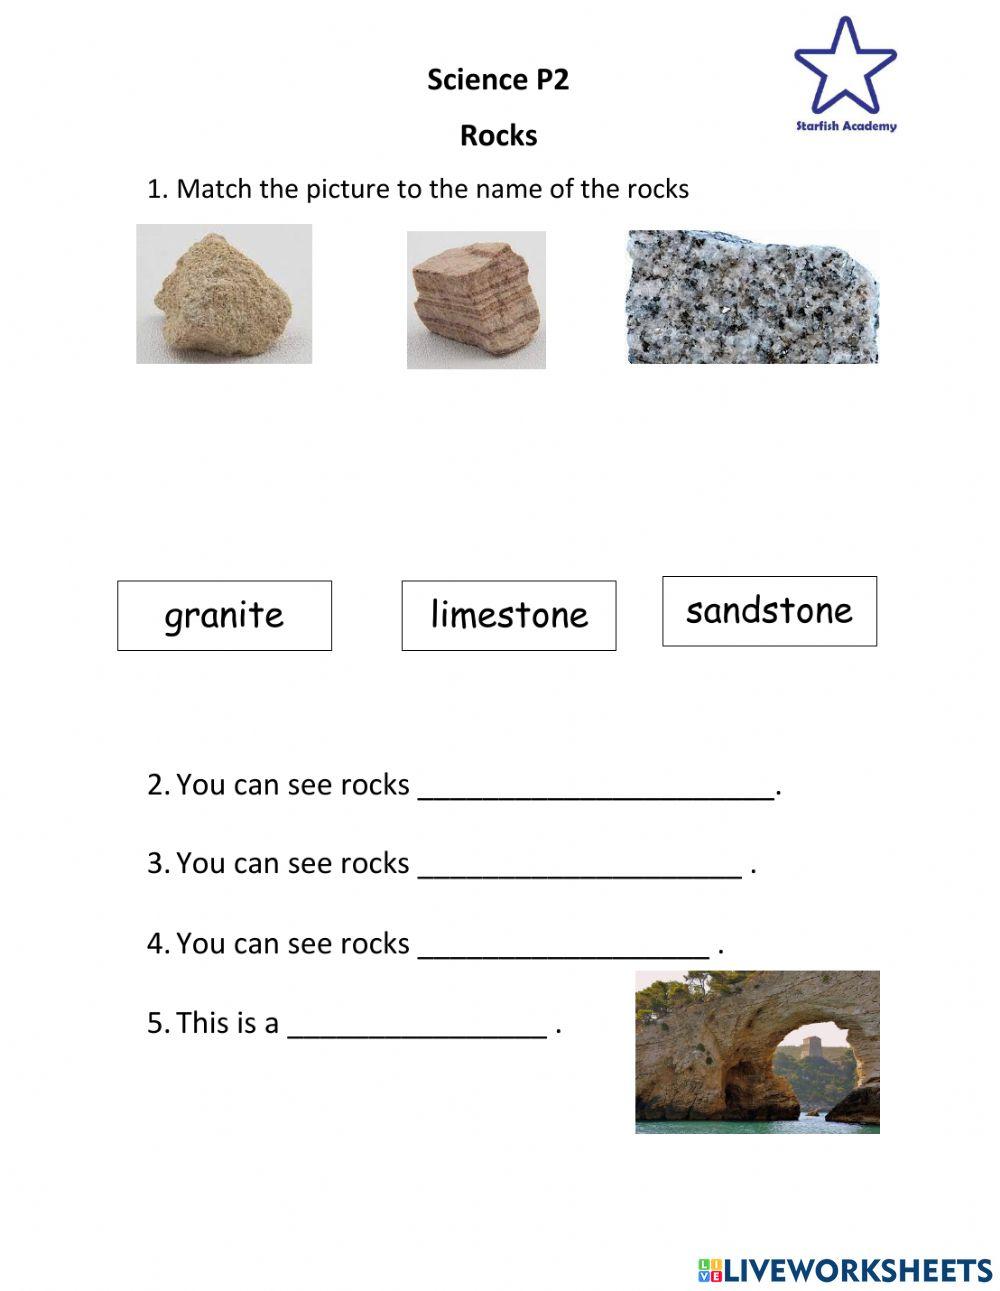 Looking at Rocks 1